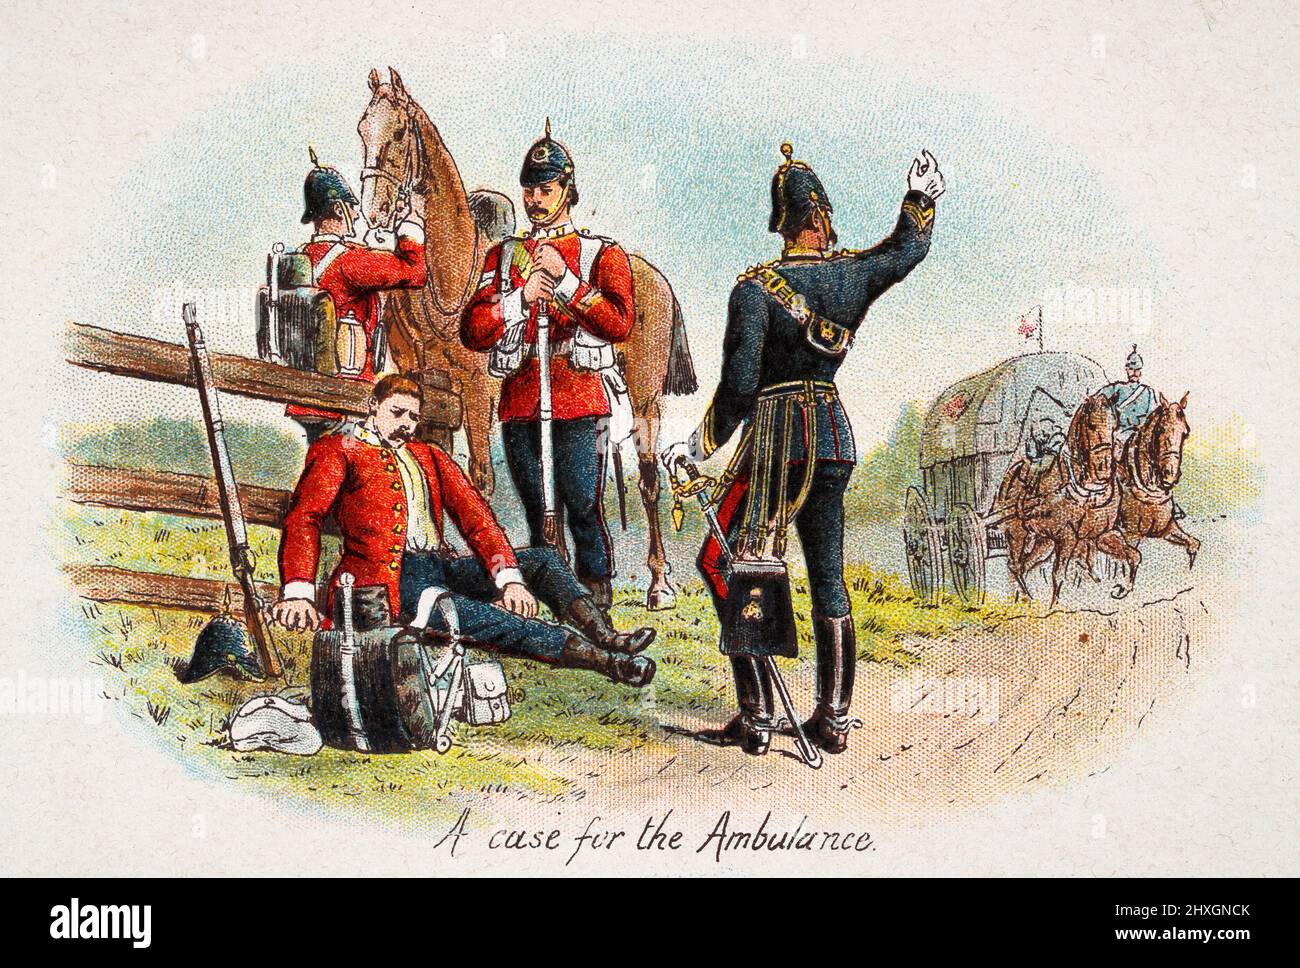 Illustrazione d'epoca dell'ambulanza militare che raccoglie un soldato ferito, l'esercito britannico vittoriano 19th secolo Foto Stock